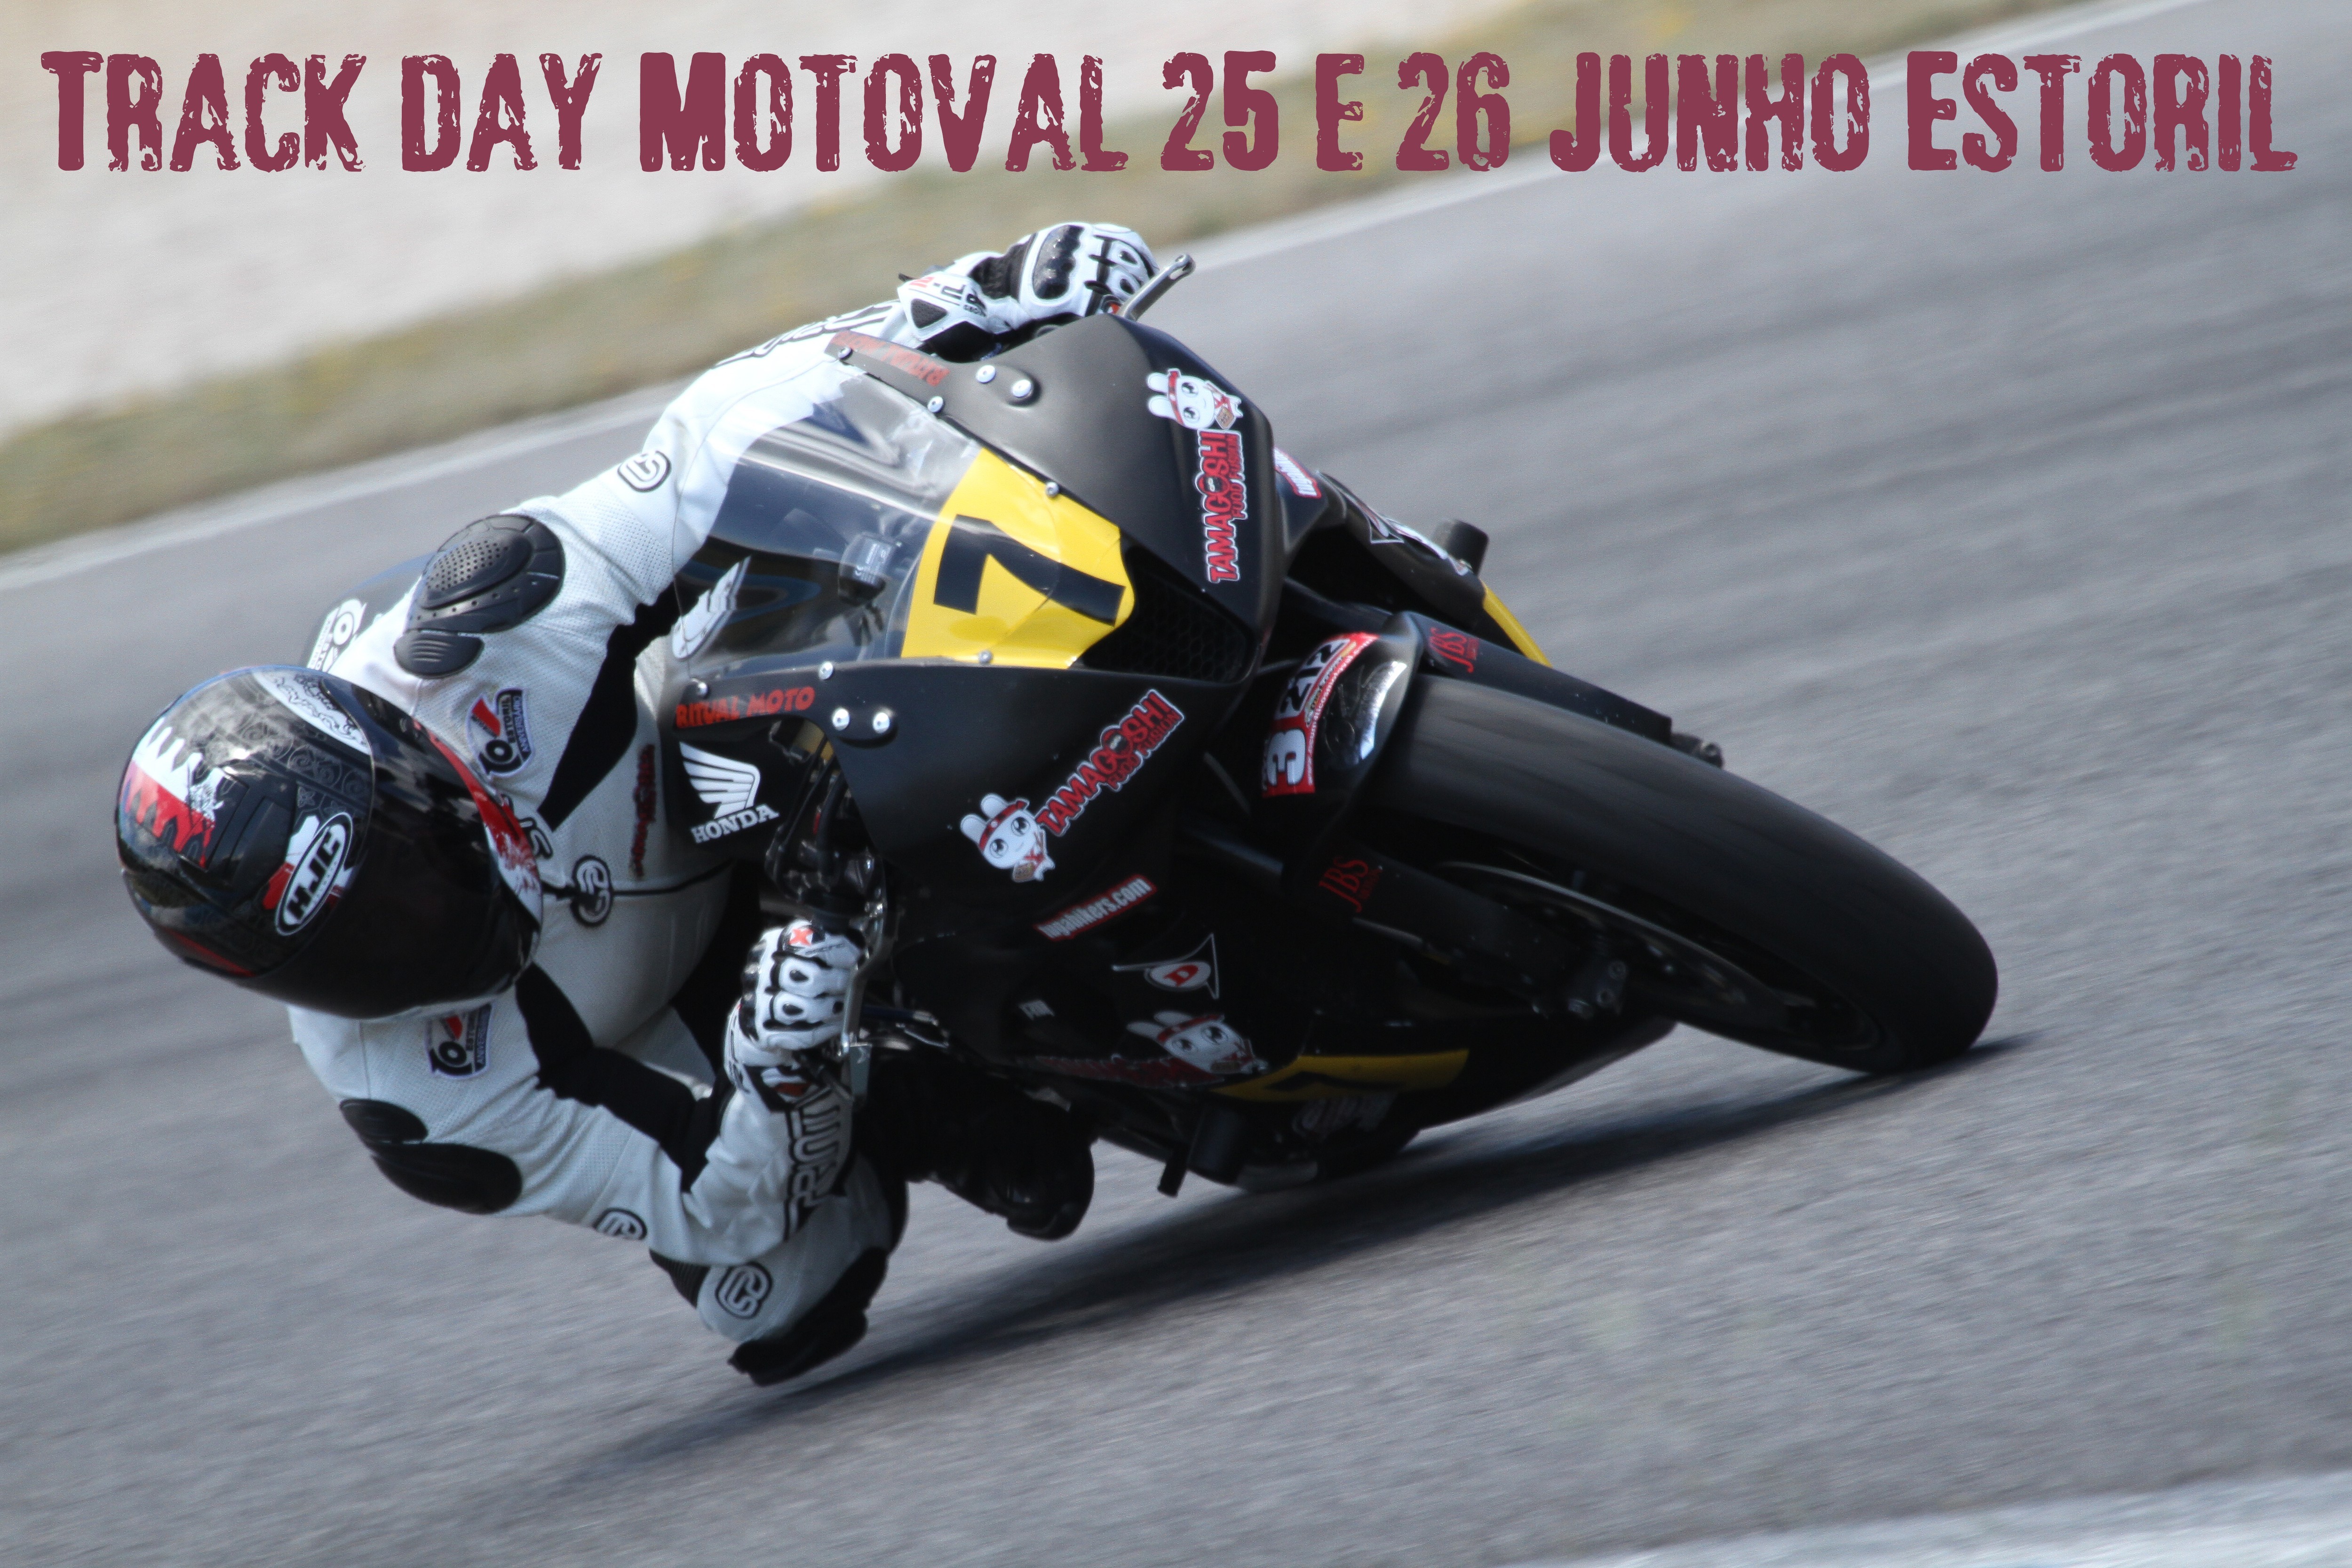 Track Day Motoval Estoril dias 25 e 26 Junho de 2016   Jw1Sa4